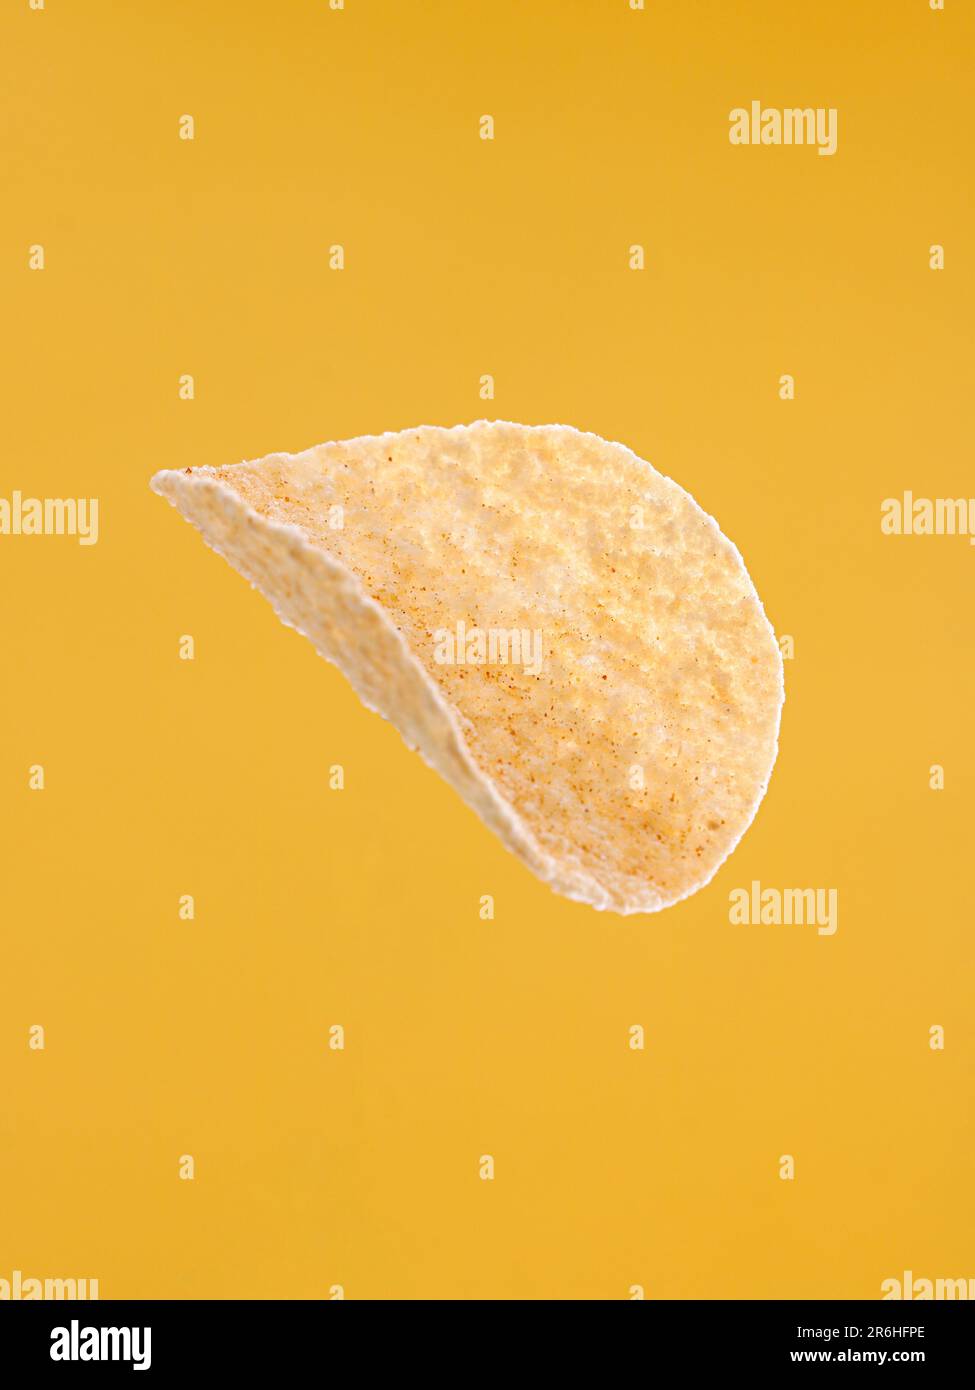 Nella foto è raffigurato un piatto di patatine non mangiate, con sfondo marrone chiaro Foto Stock